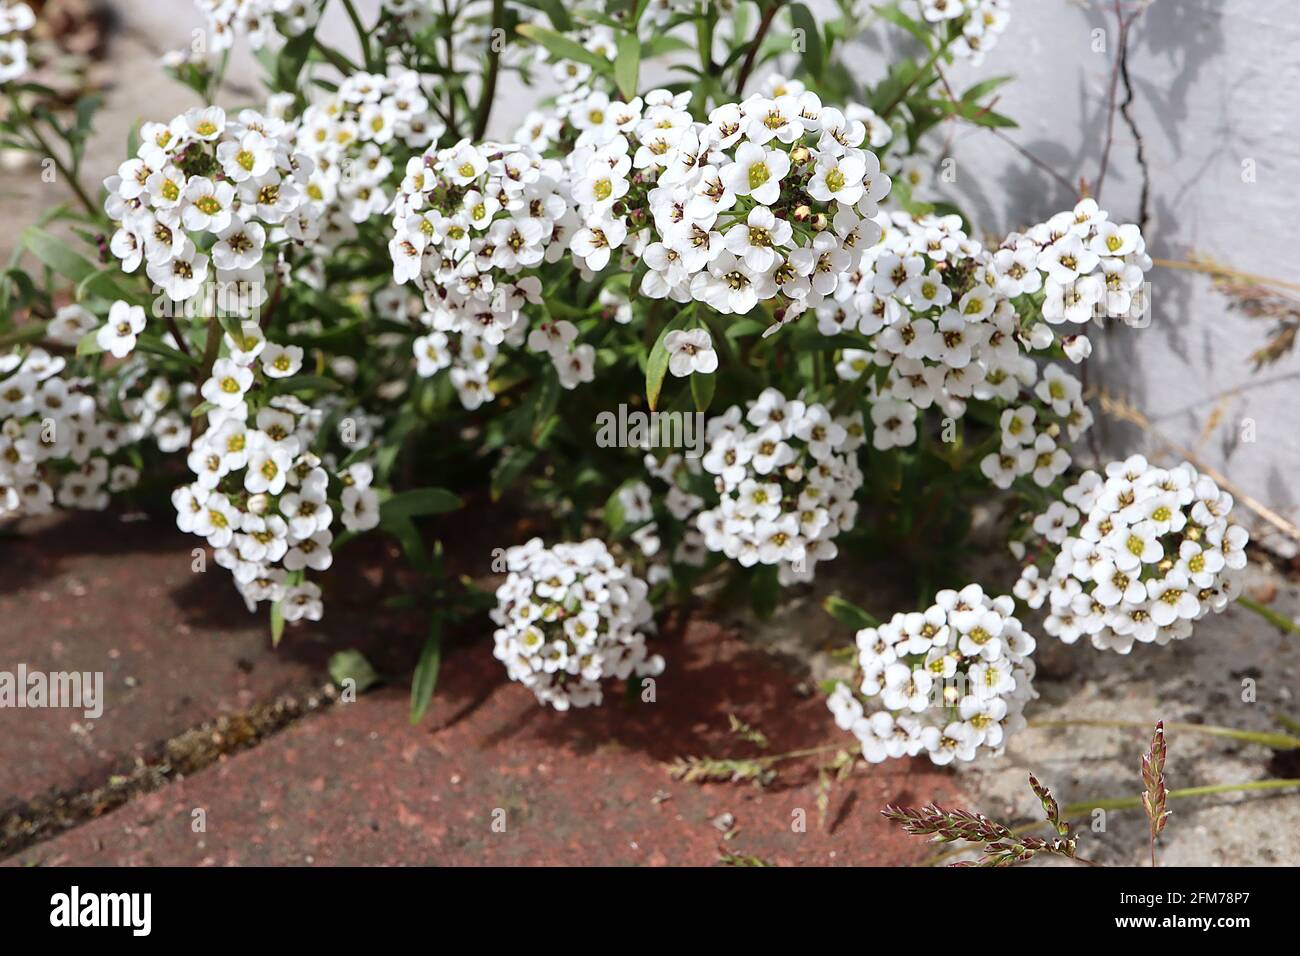 Lobularia maritima ‘Benthamii’ sweet alyssum Benthamii – domed clusters small white flowers,  May, England, UK Stock Photo